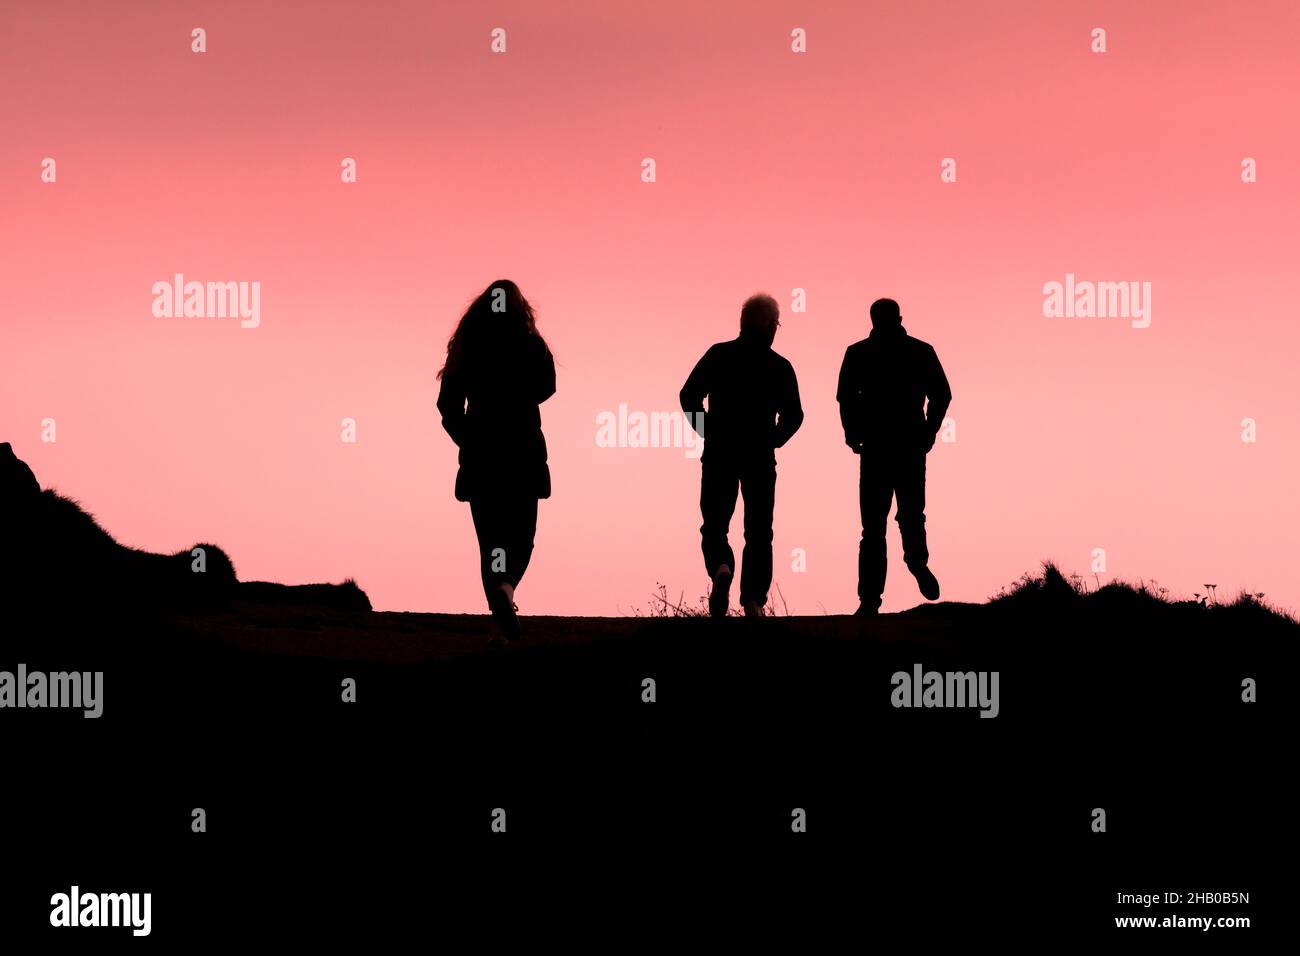 Drei Menschen, die am Ende des Tages in Newquay in Cornwall den Küstenpfad entlang wanderten, schillerten gegen einen bunten Himmel. Stockfoto